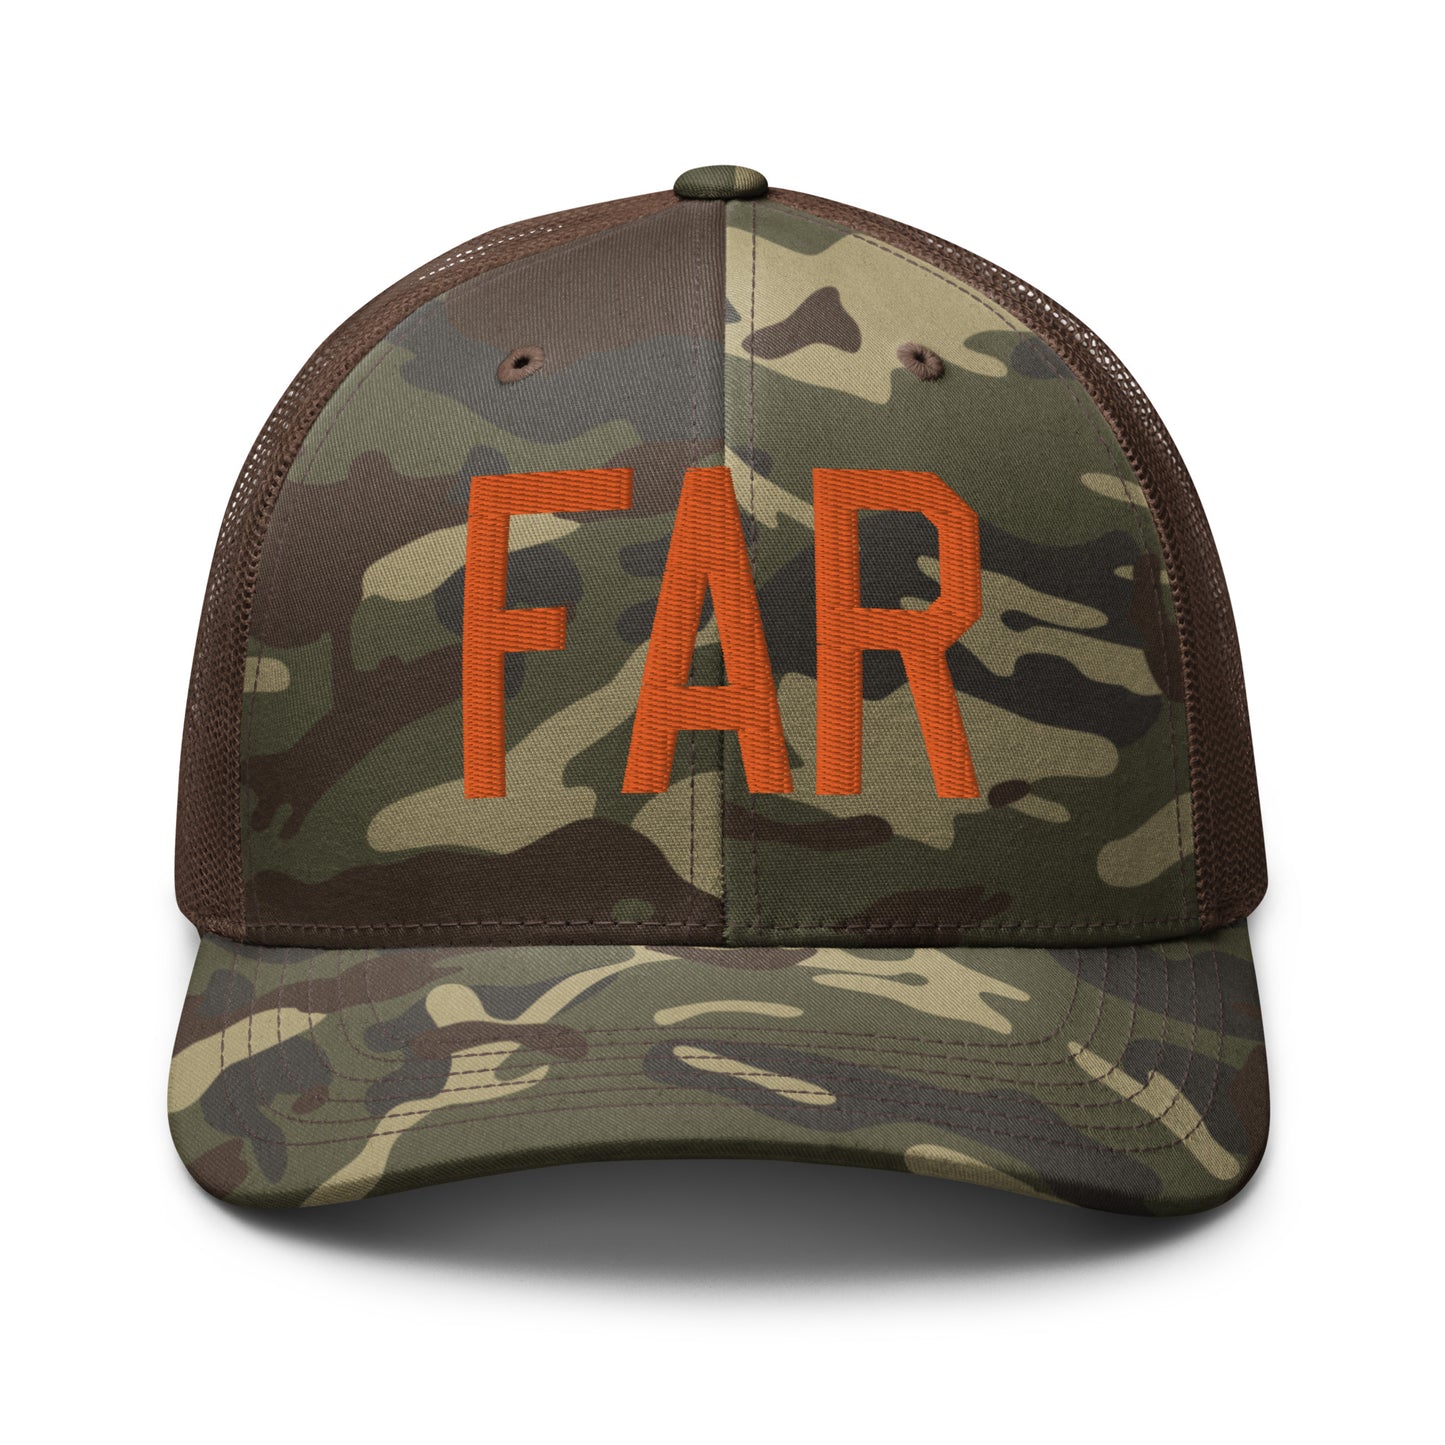 Airport Code Camouflage Trucker Hat - Orange • FAR Fargo • YHM Designs - Image 13